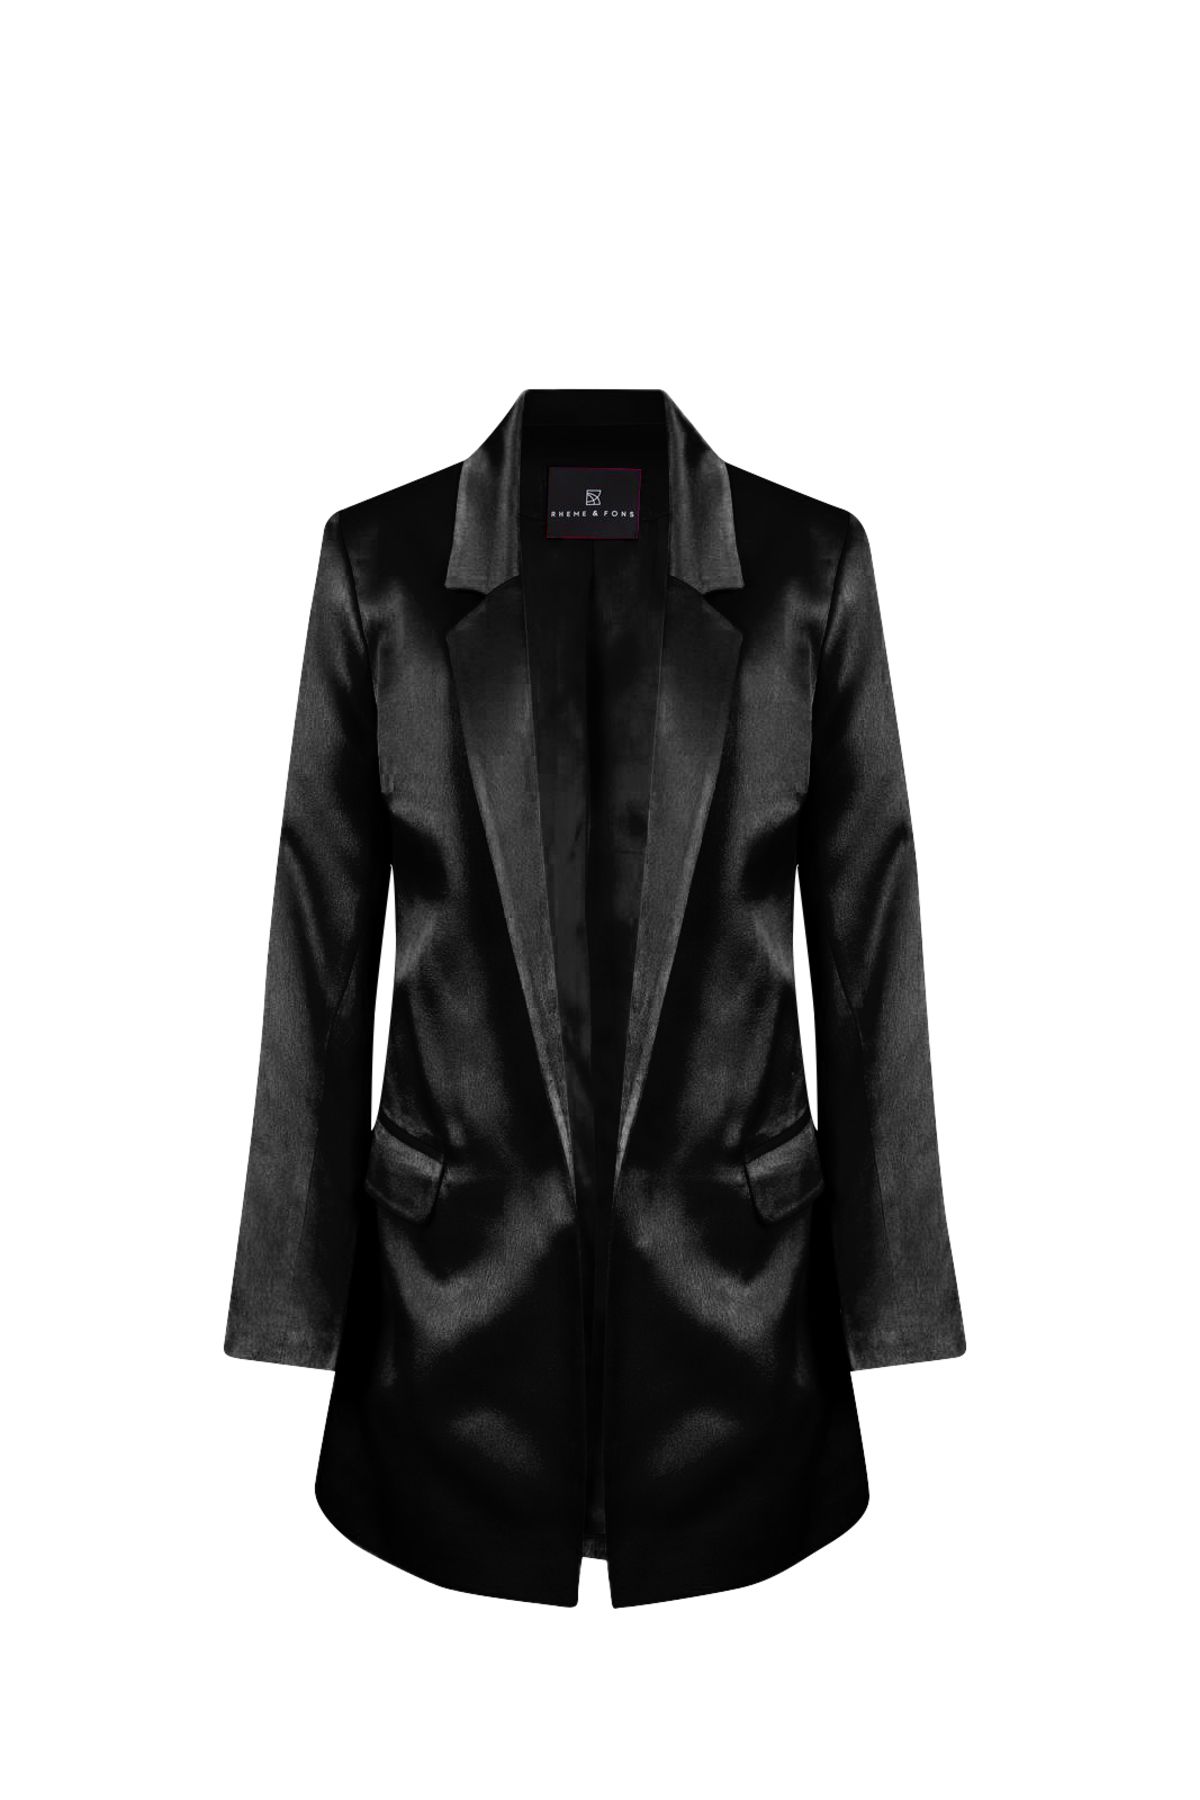 Rheme And Fons Özel Tasarım Couture El Işçiliği Siyah Kadın Blazer Ceket